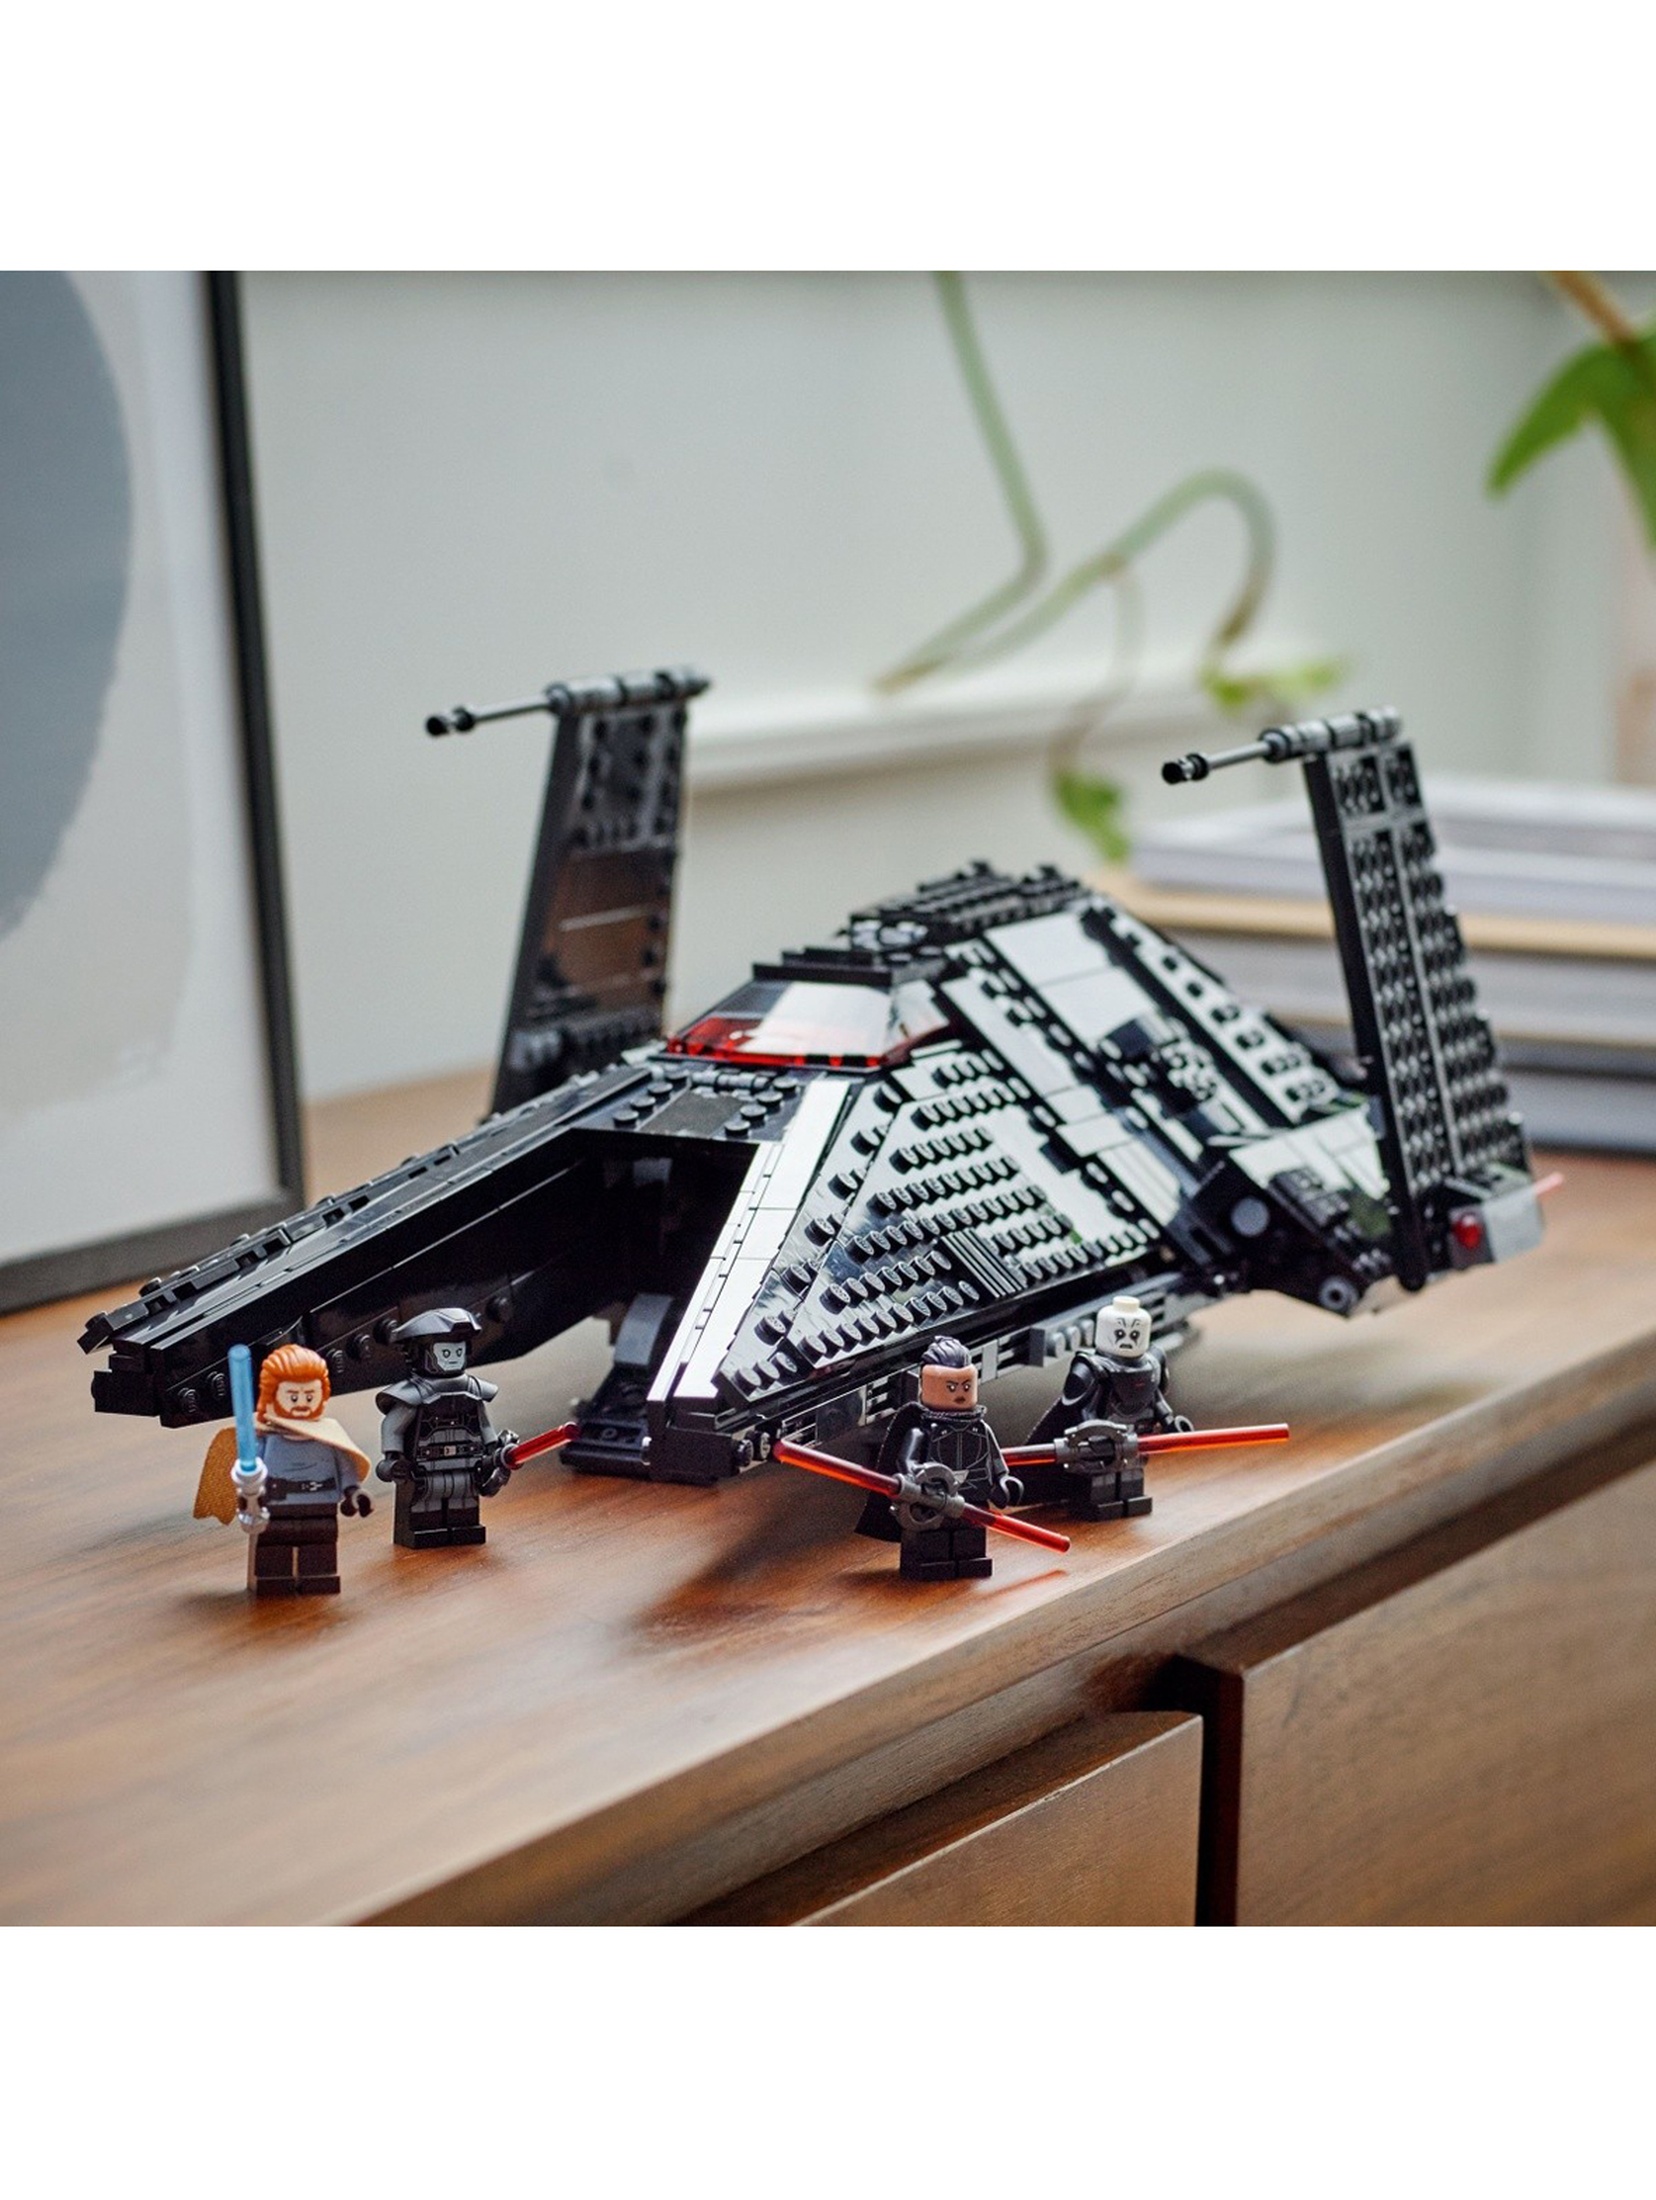 LEGO Star Wars - Transporter Inkwizytorów Scythe™ 75336 - 924 elementy, wiek 9+